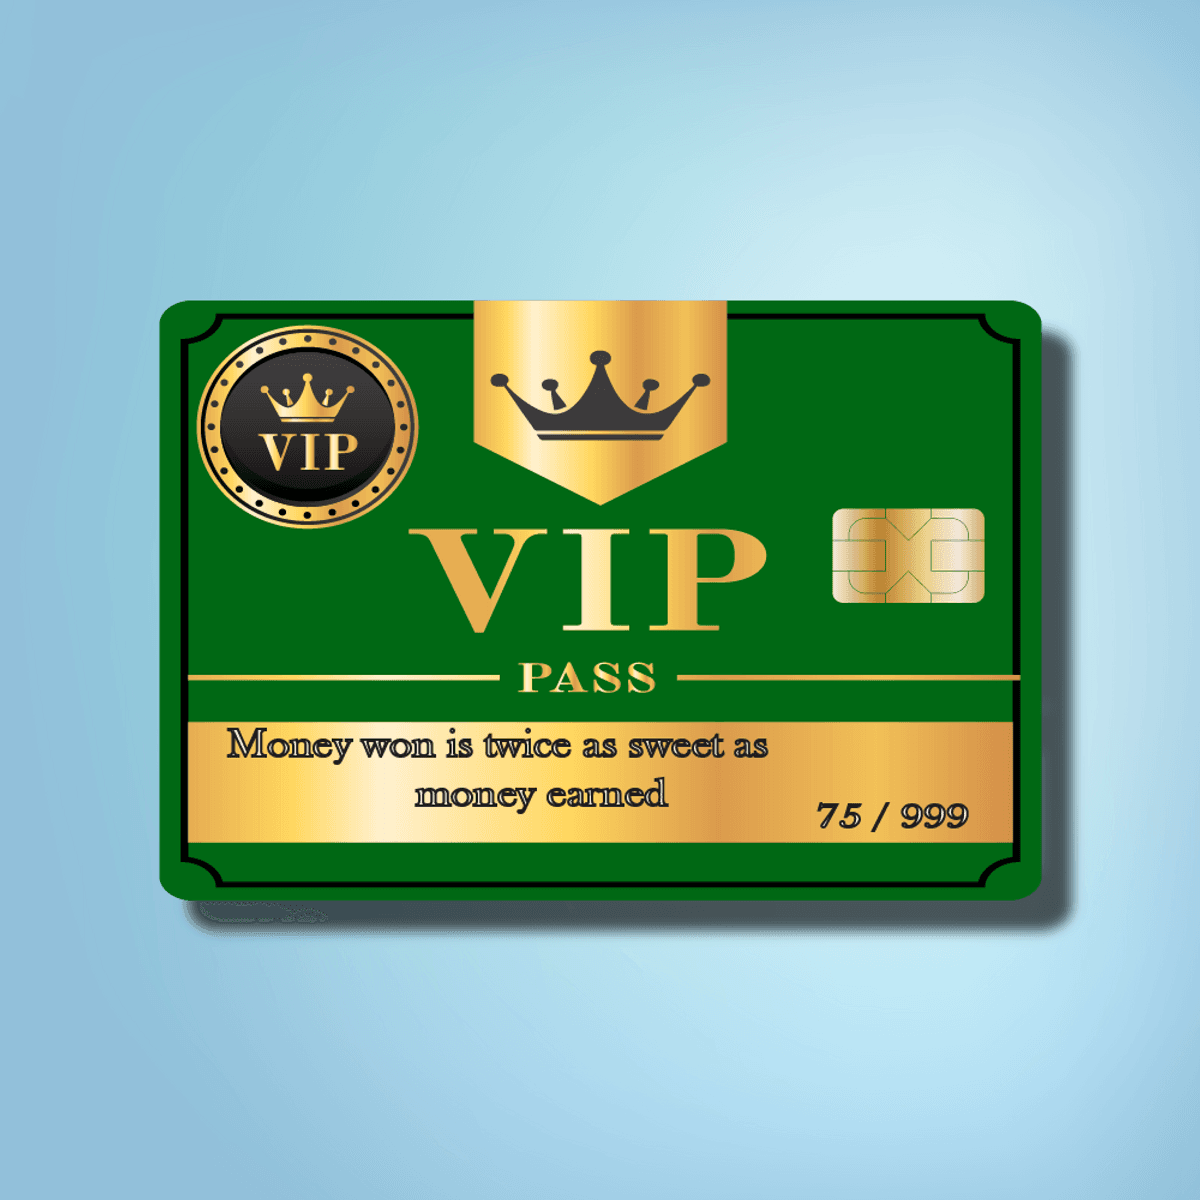 VIP Card #75